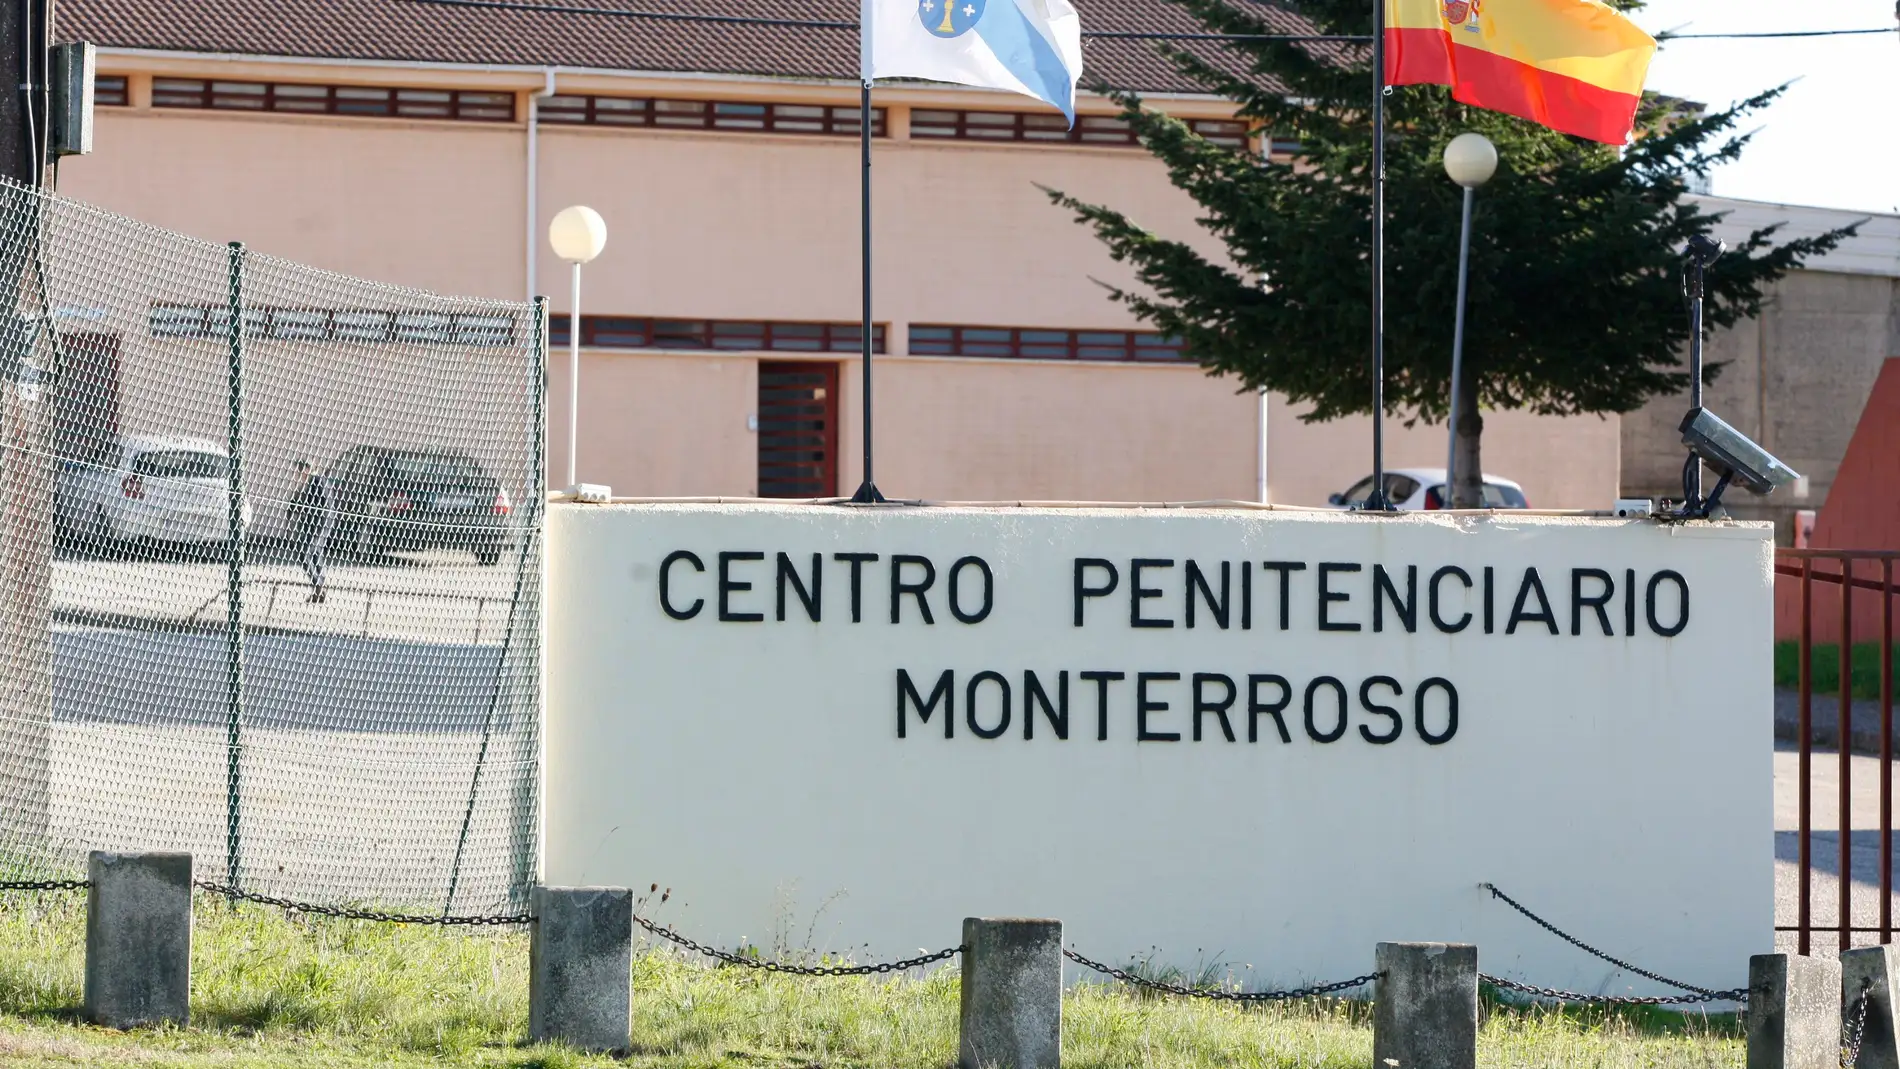 Siete presos de la cárcel de Lugo se graban consumiendo droga y con objetos prohibidos